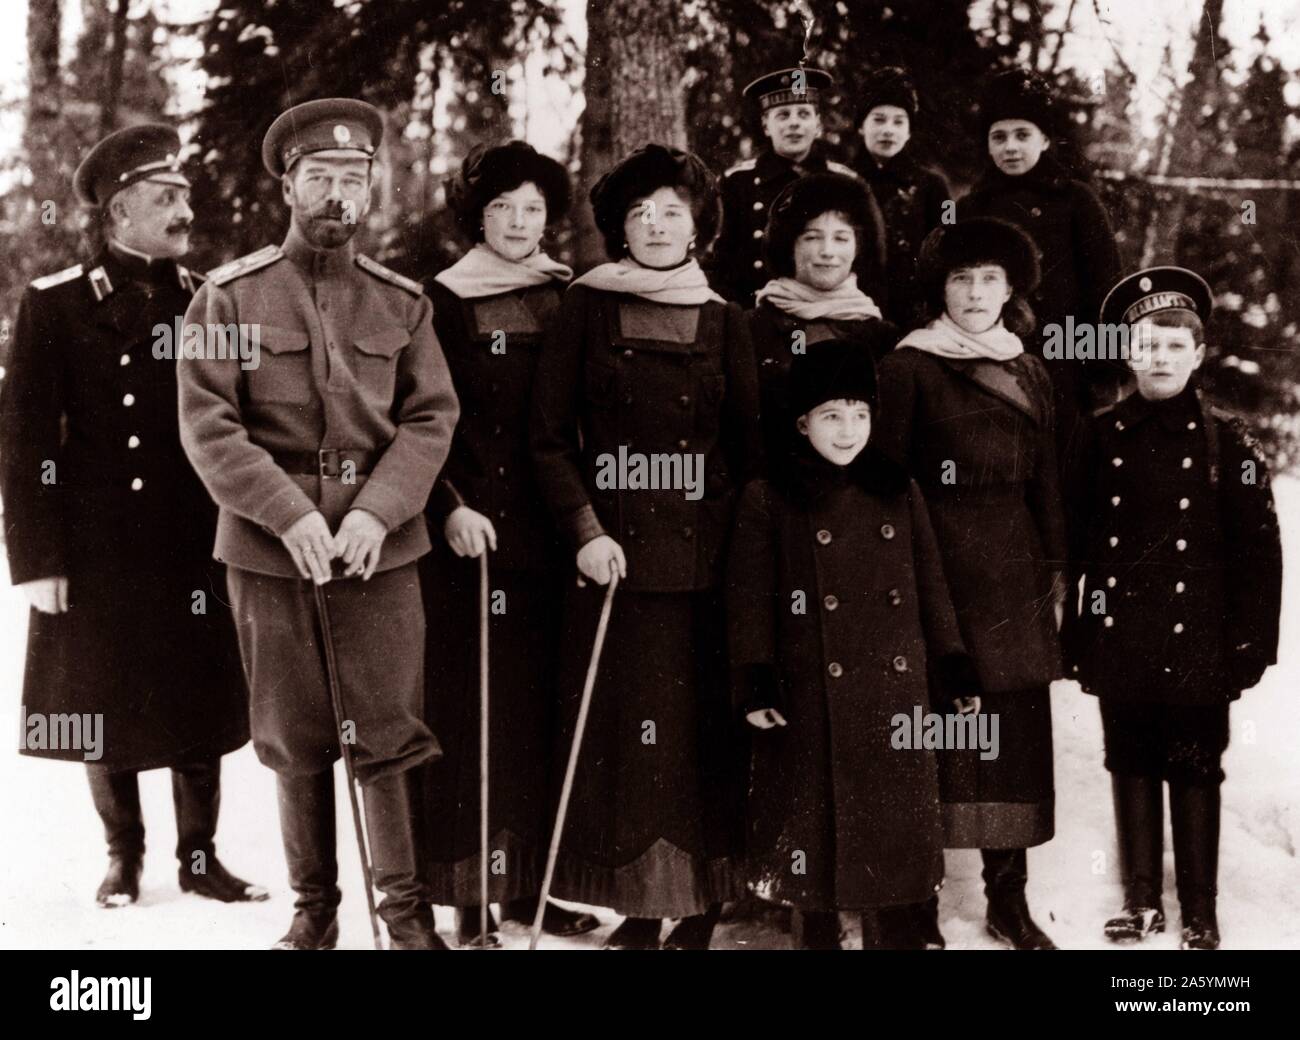 Fotografia del Tsar Nicholas II dal russo famiglia reale. intorno al momento della sua abdicazione nel marzo 1917. L'immagine mostra il Romanovs si fermò all'aperto a Carskoe Selo, Russia. Fotografato a circa 1916-1917. Foto Stock